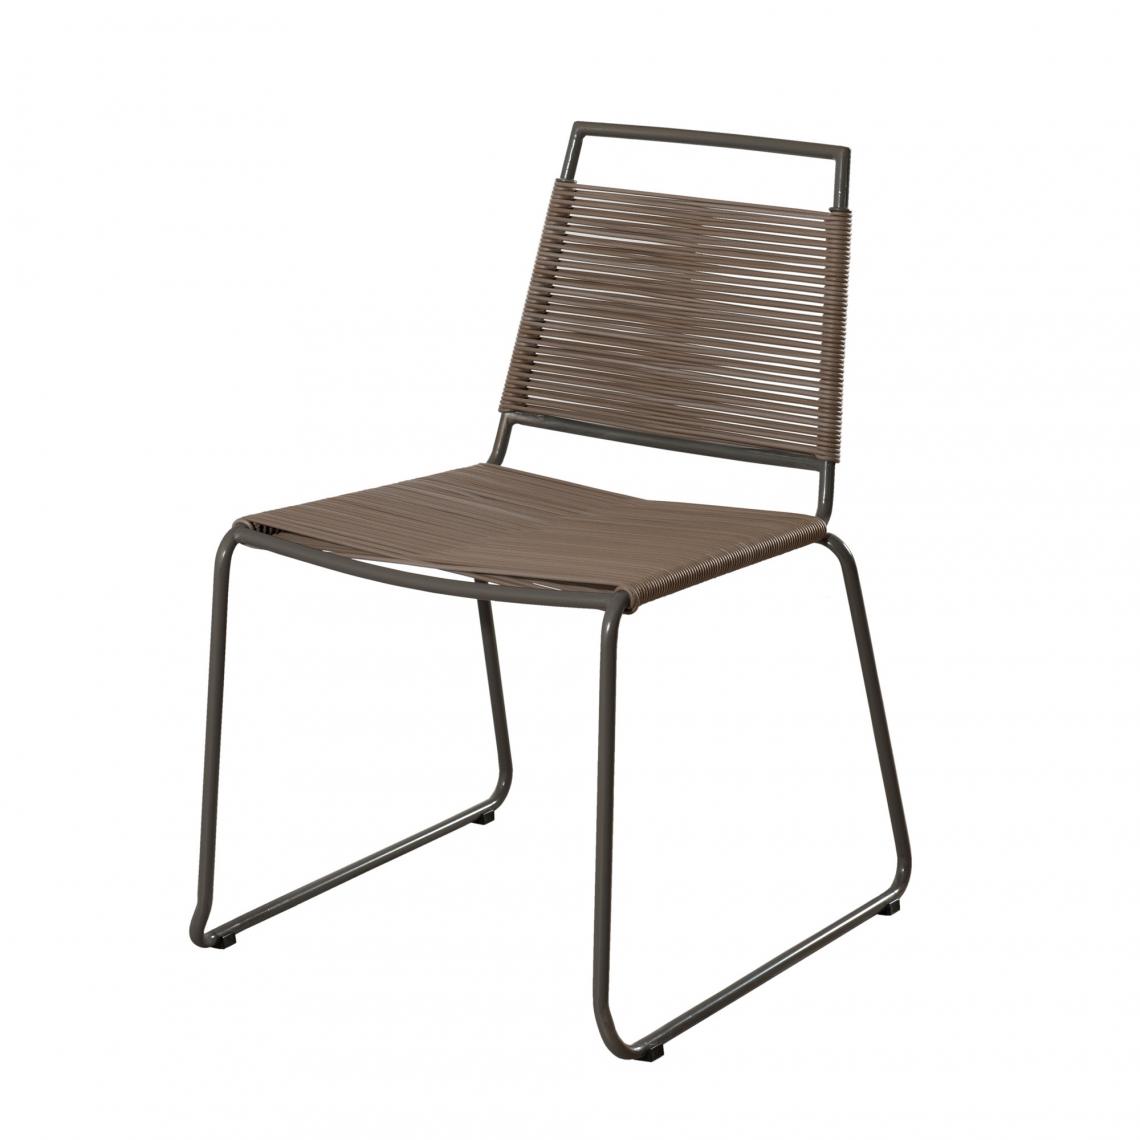 MACABANE - Lot de 2 chaises empilables en métal et cordage synthétique - Chaises